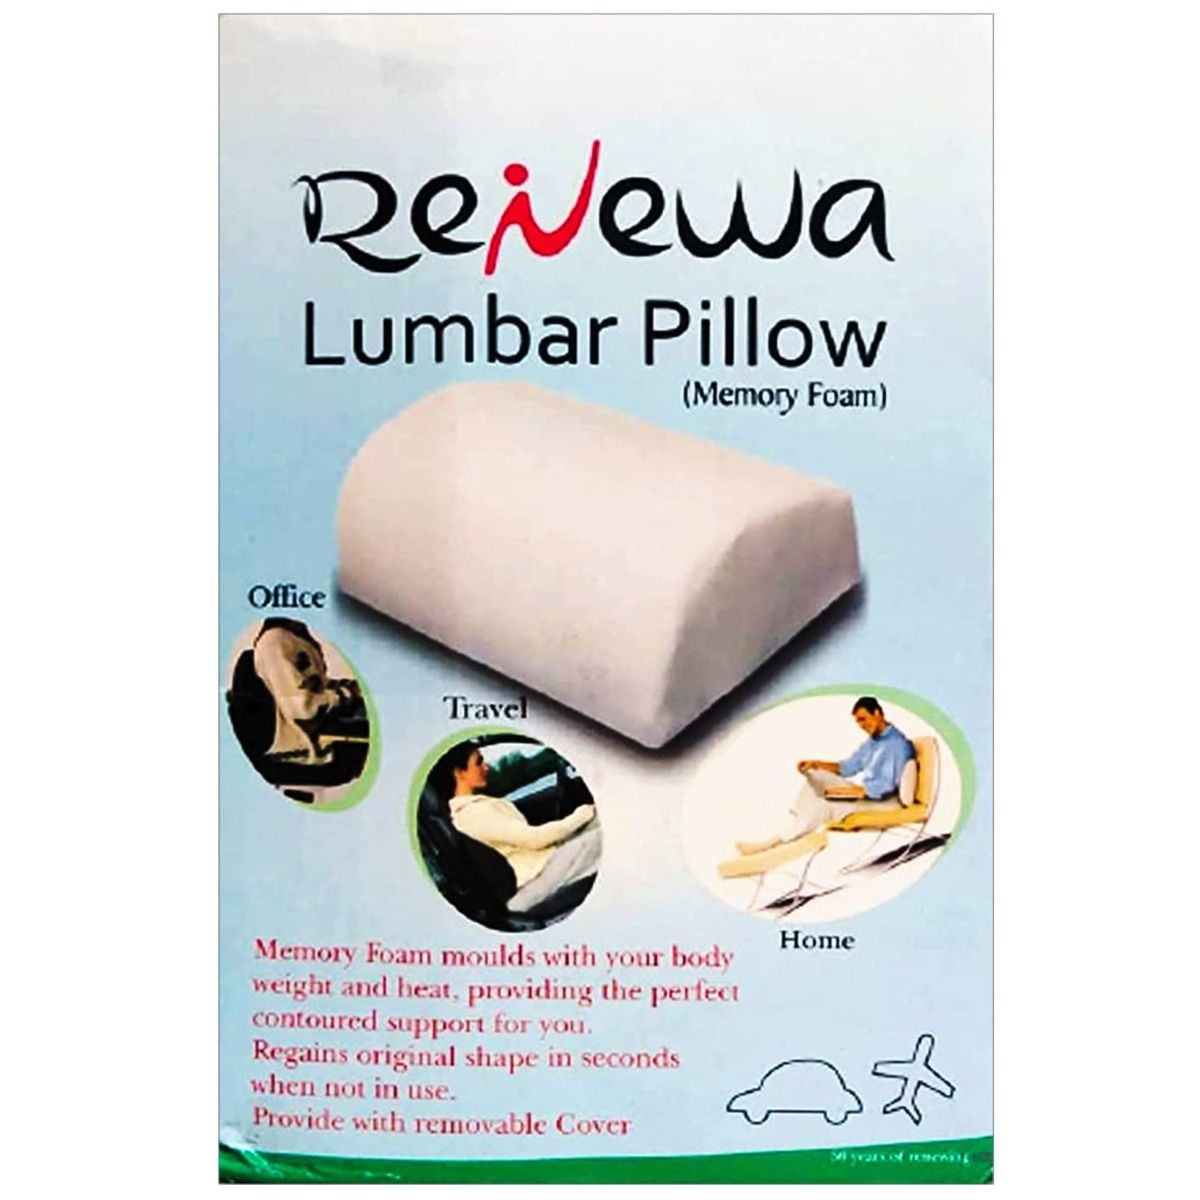 Renewa Memory Foam Lumbar Pillow, 1 Count, Pack of 1 